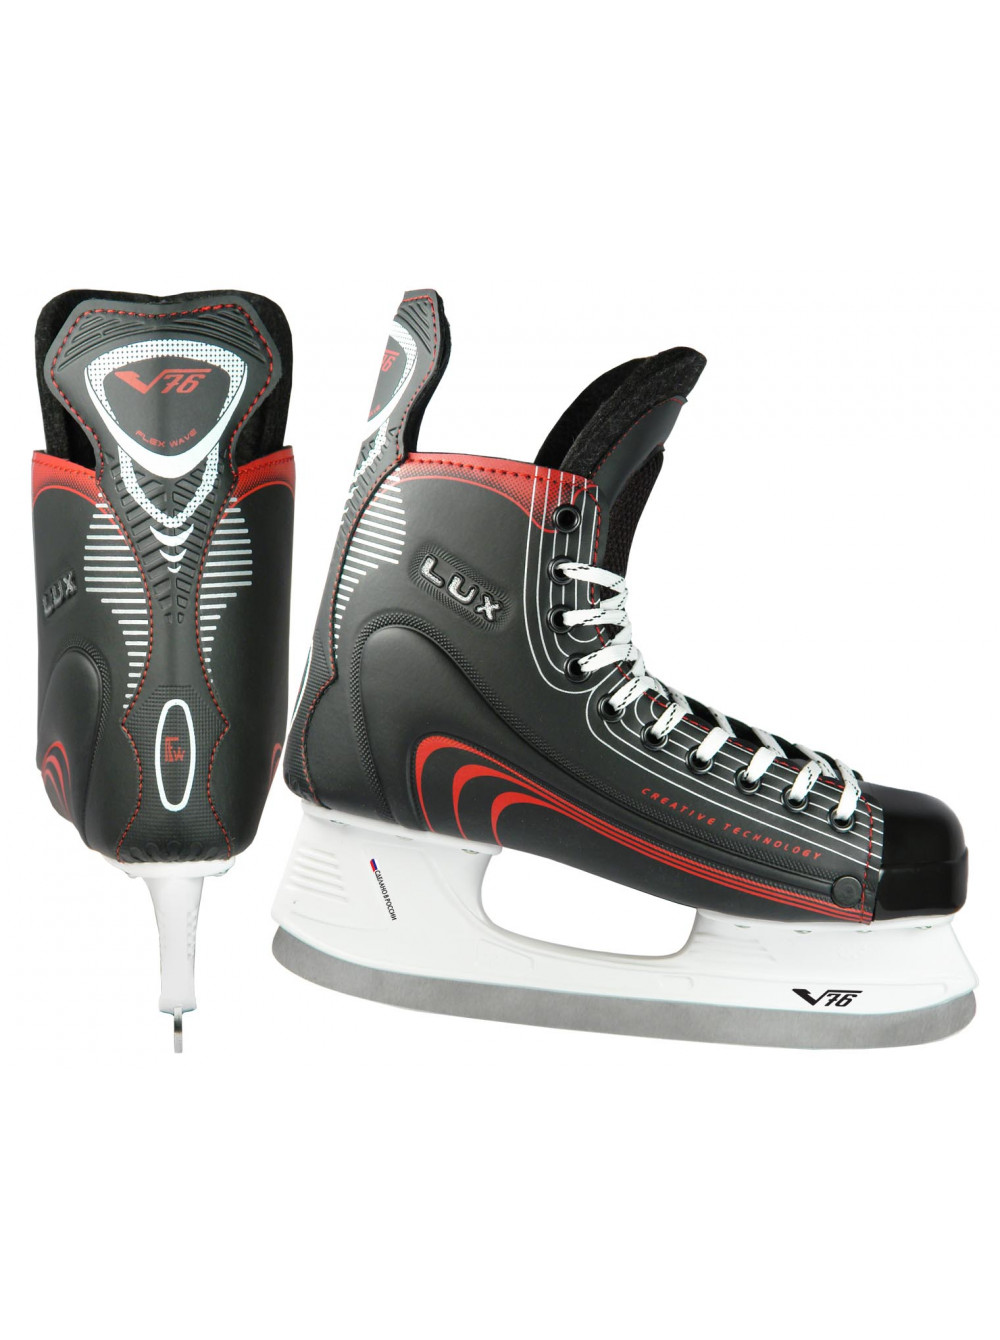 Хоккейные коньки стоили 2500 рублей. Хоккейные коньки v76 Lux-s. Хоккейные коньки v76 Lux Pro-v. Хоккейные коньки v76 Lux-e. Коньки v76 f1.1.